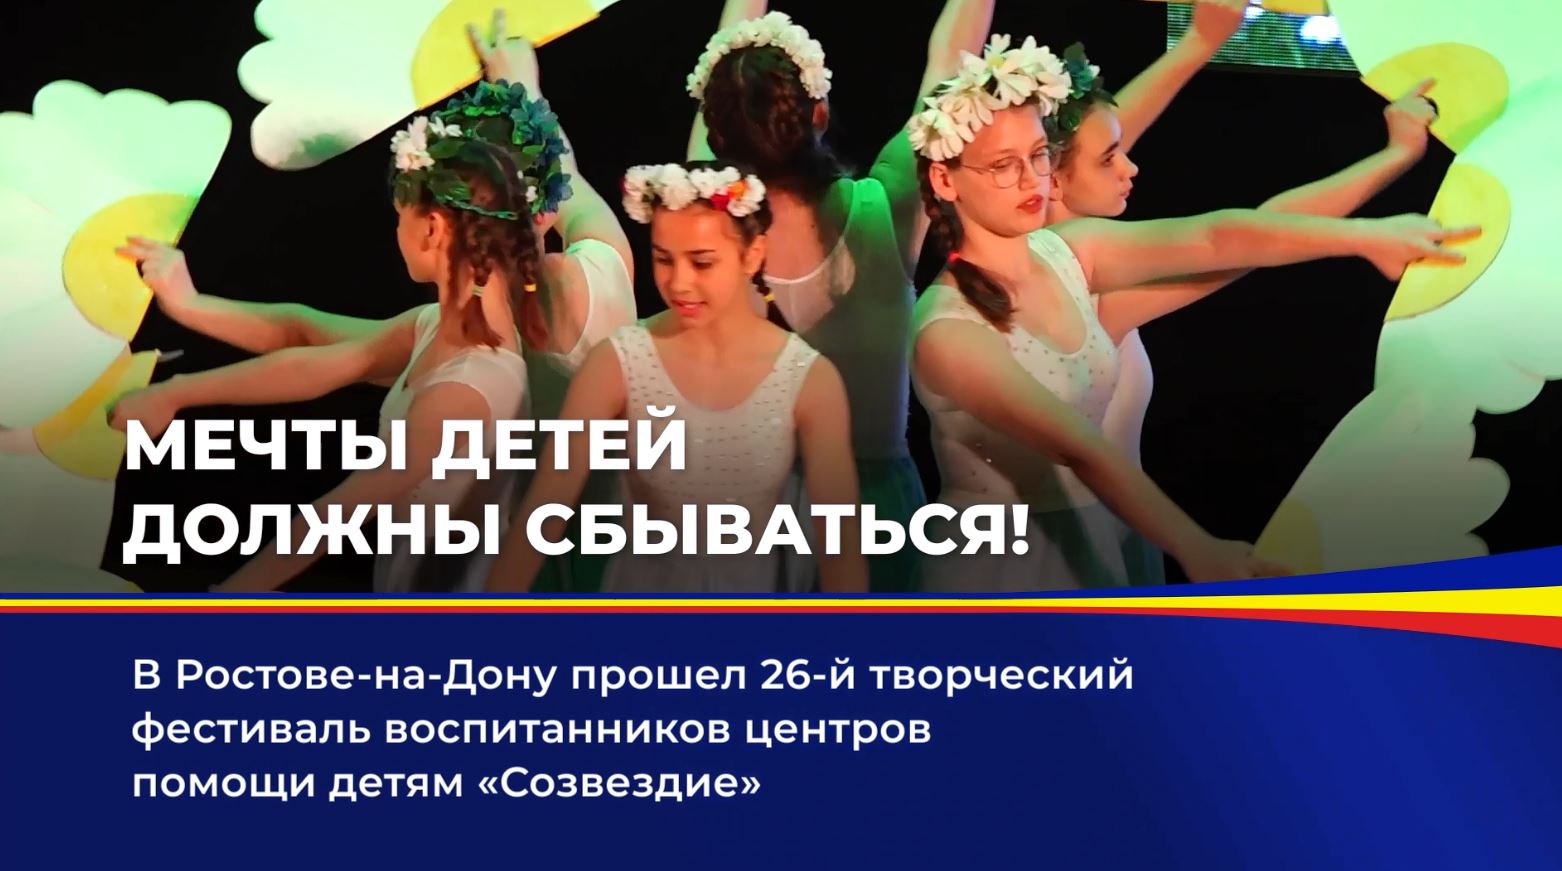 В донской столице состоялся творческий фестиваль воспитанников центров помощи детям Ростовской области «Созвездие»